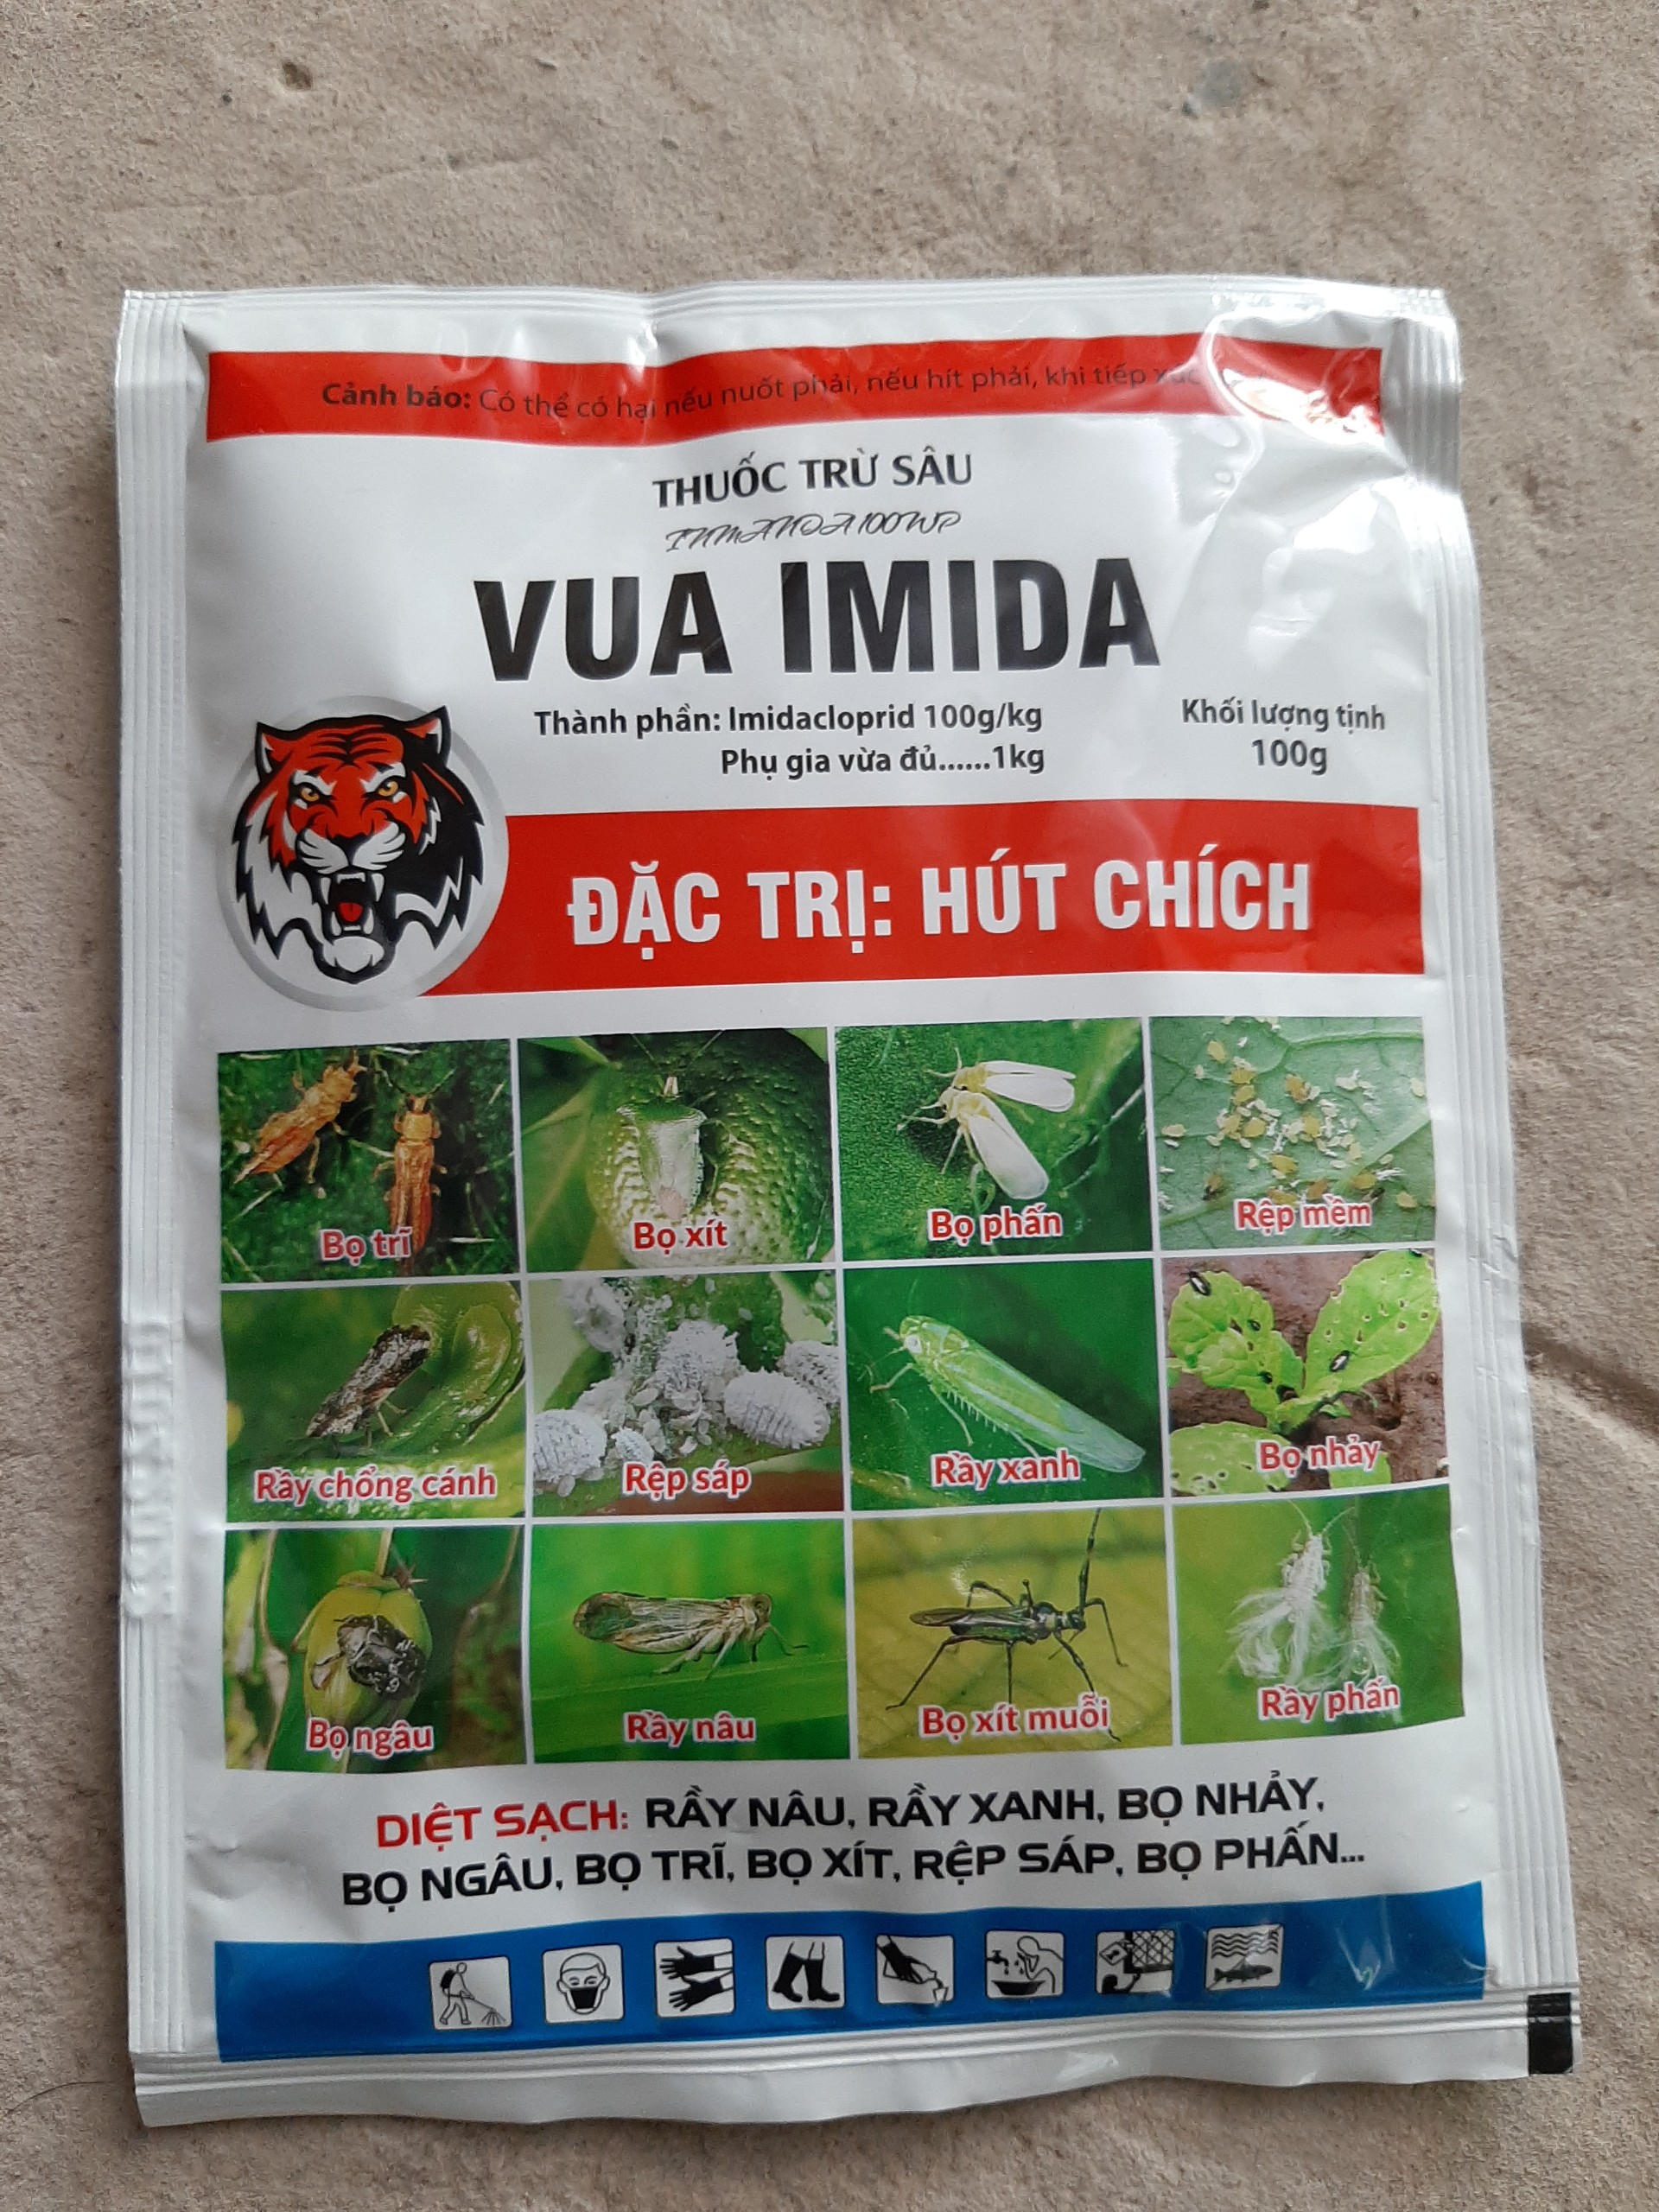 Thuốc trừ sâu Vua imada gói 100g (Imidacloprid 100g/kg) Diệt sạch chích hút, bọ trĩ, rầy nâu, rầy xanh